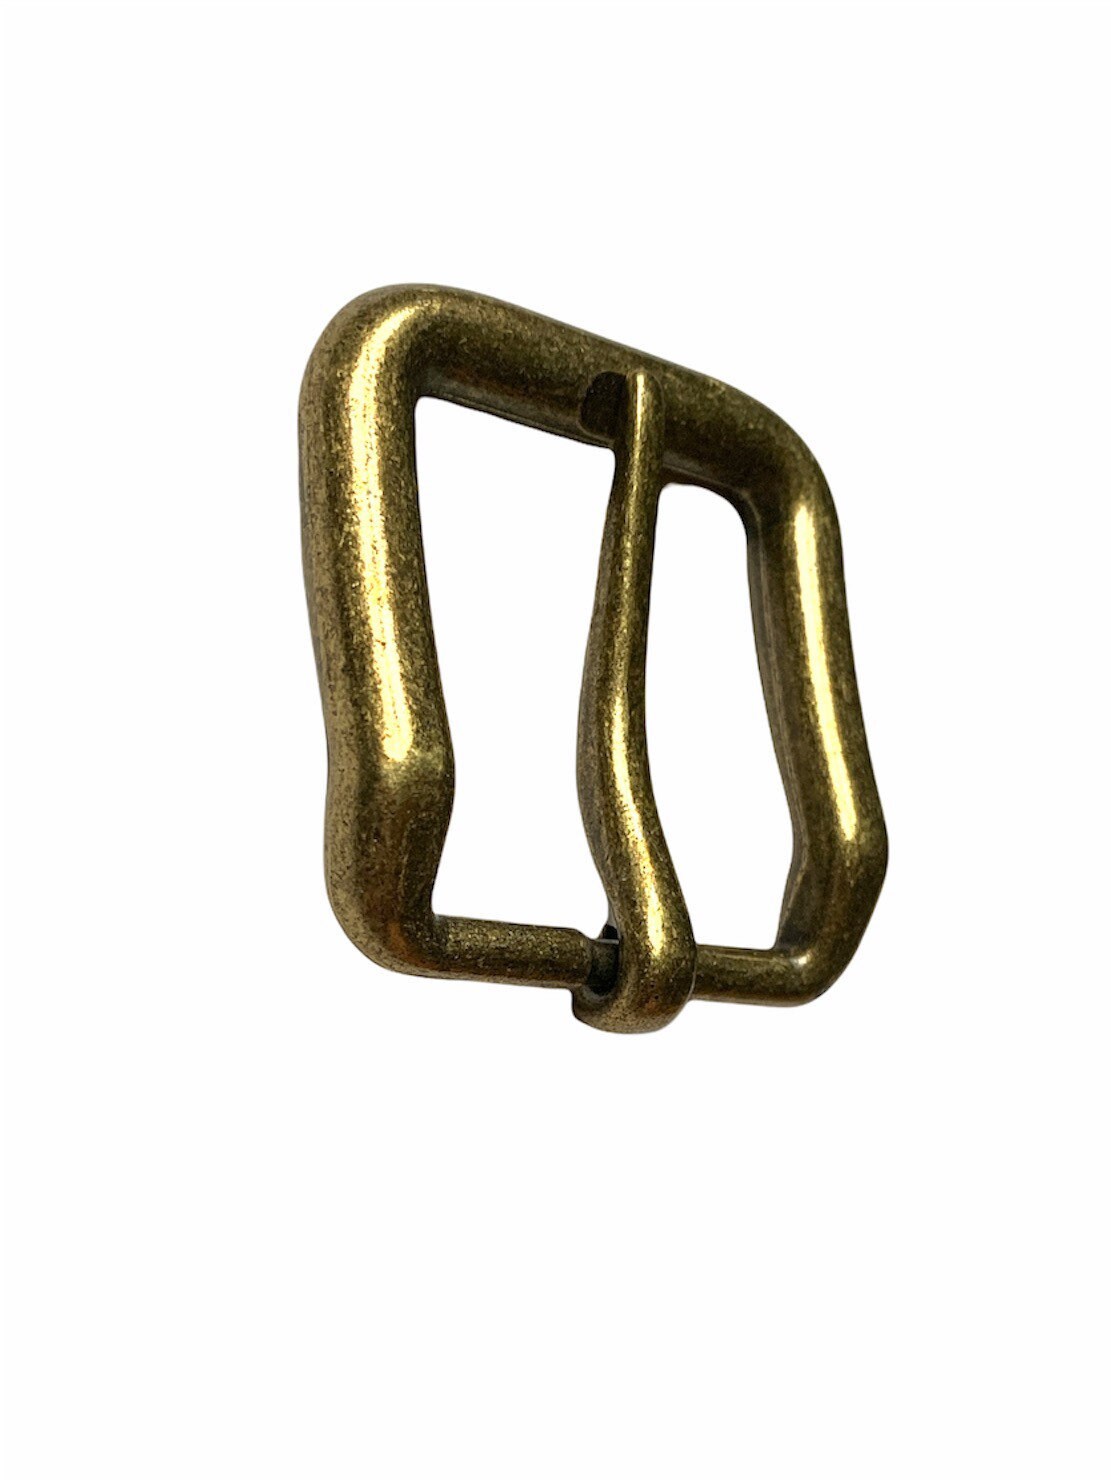 Cinturón de a  Hebilla en oro latón fundido - Guarnicionería Vilches